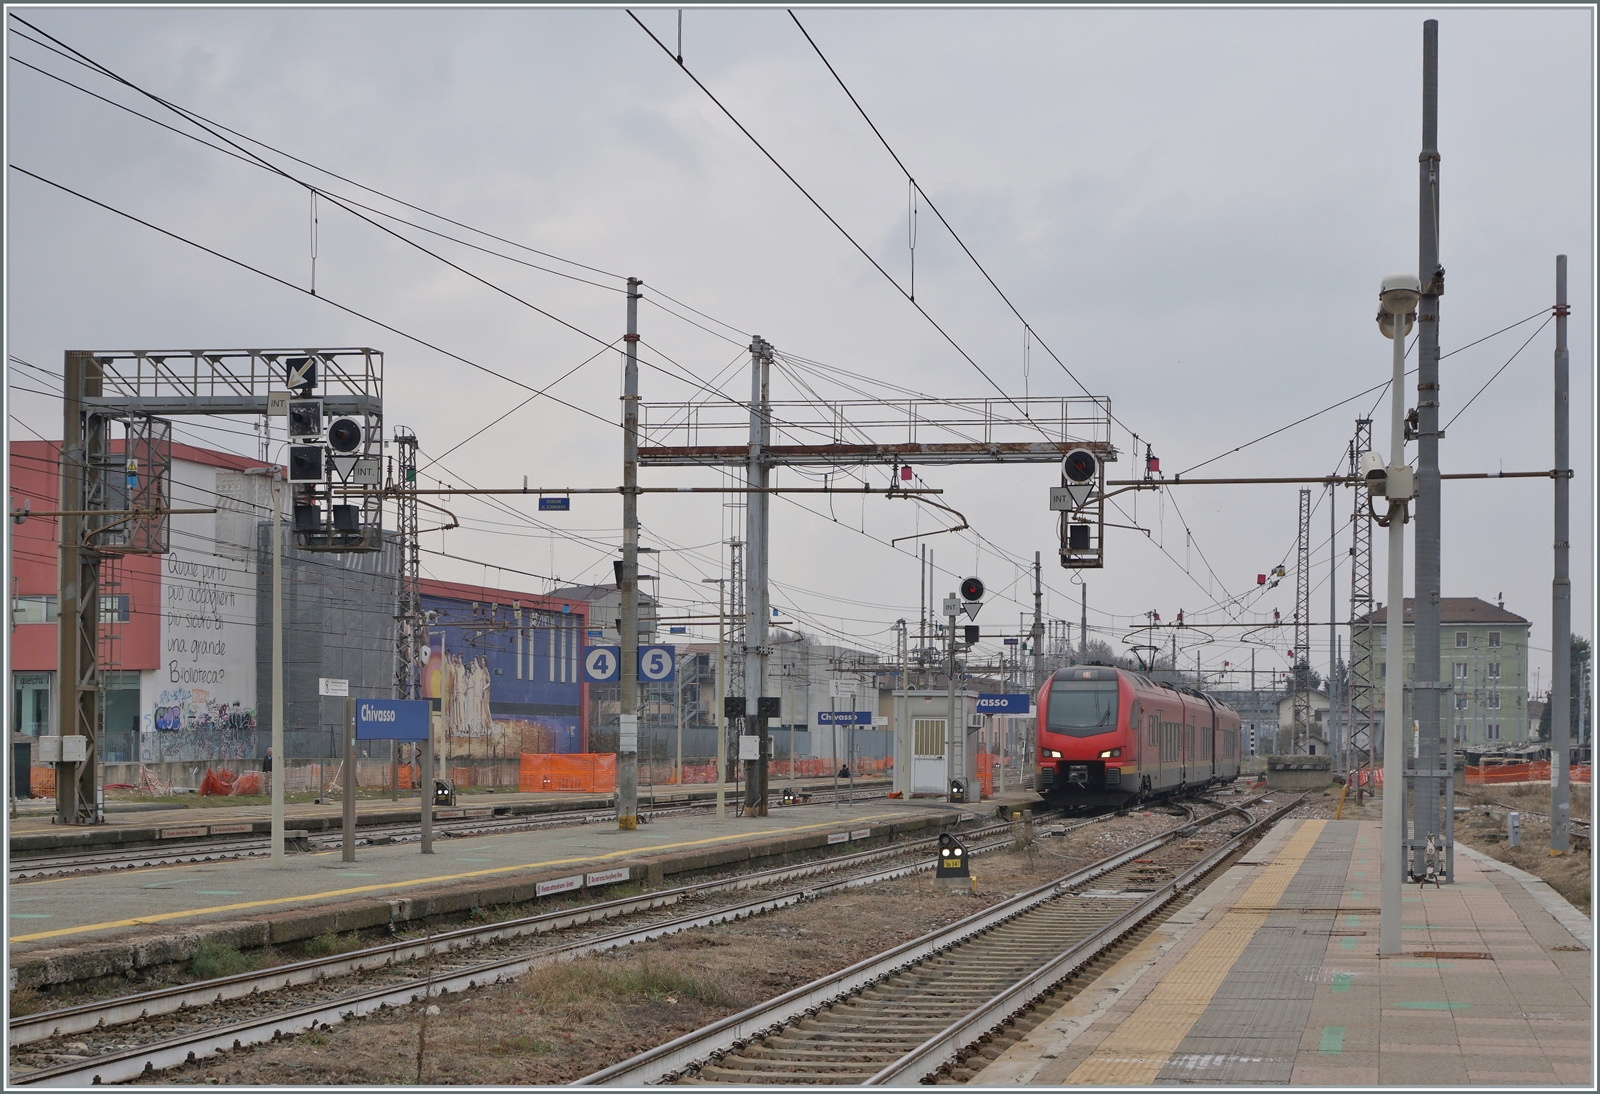 Der FS Trenitalia BTR 813 als RE VdA von Aosta nach Torino Porta Nuova unterwegs erreicht den Bahnhof von Chivasso.

24. Feb. 2023